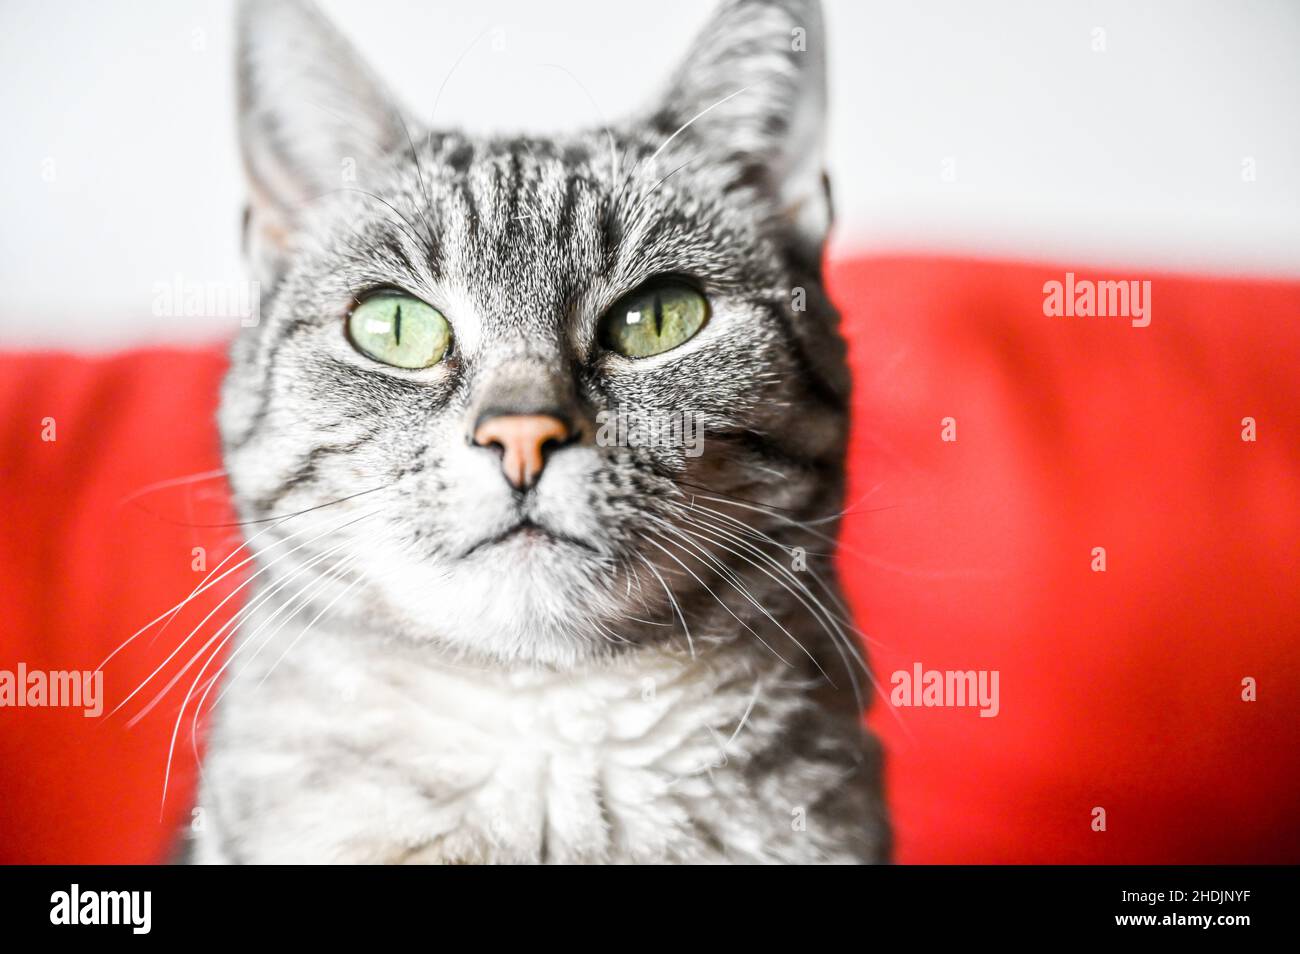 Portrait d'un chat gris d'Europe à courte vue avec des rayures noires et des yeux verts Banque D'Images